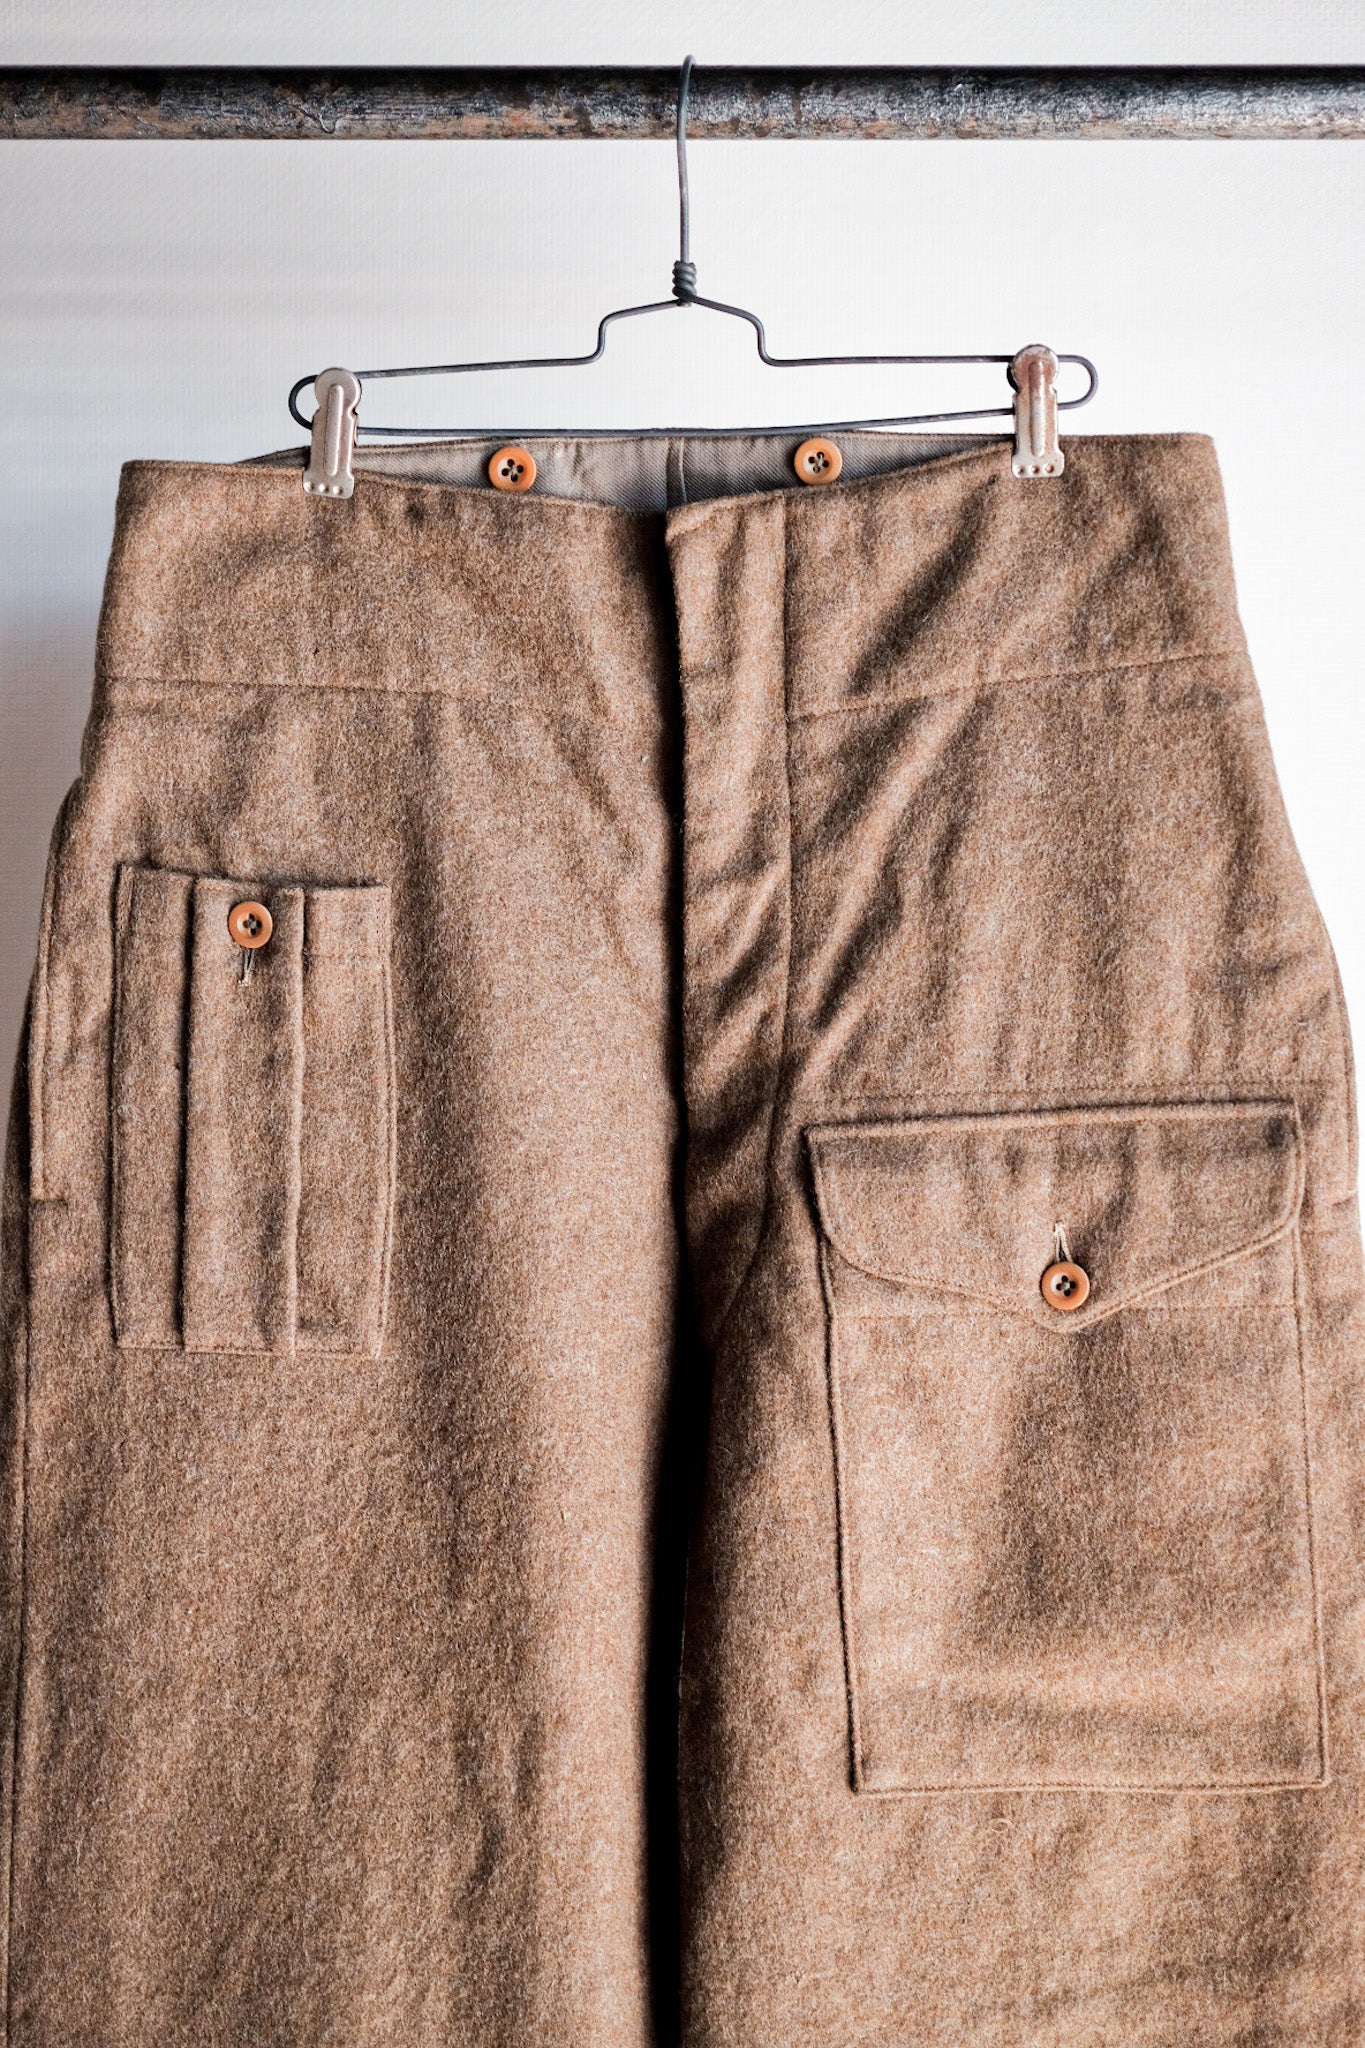 [〜50年代]英國軍隊戰鬥羊毛長褲